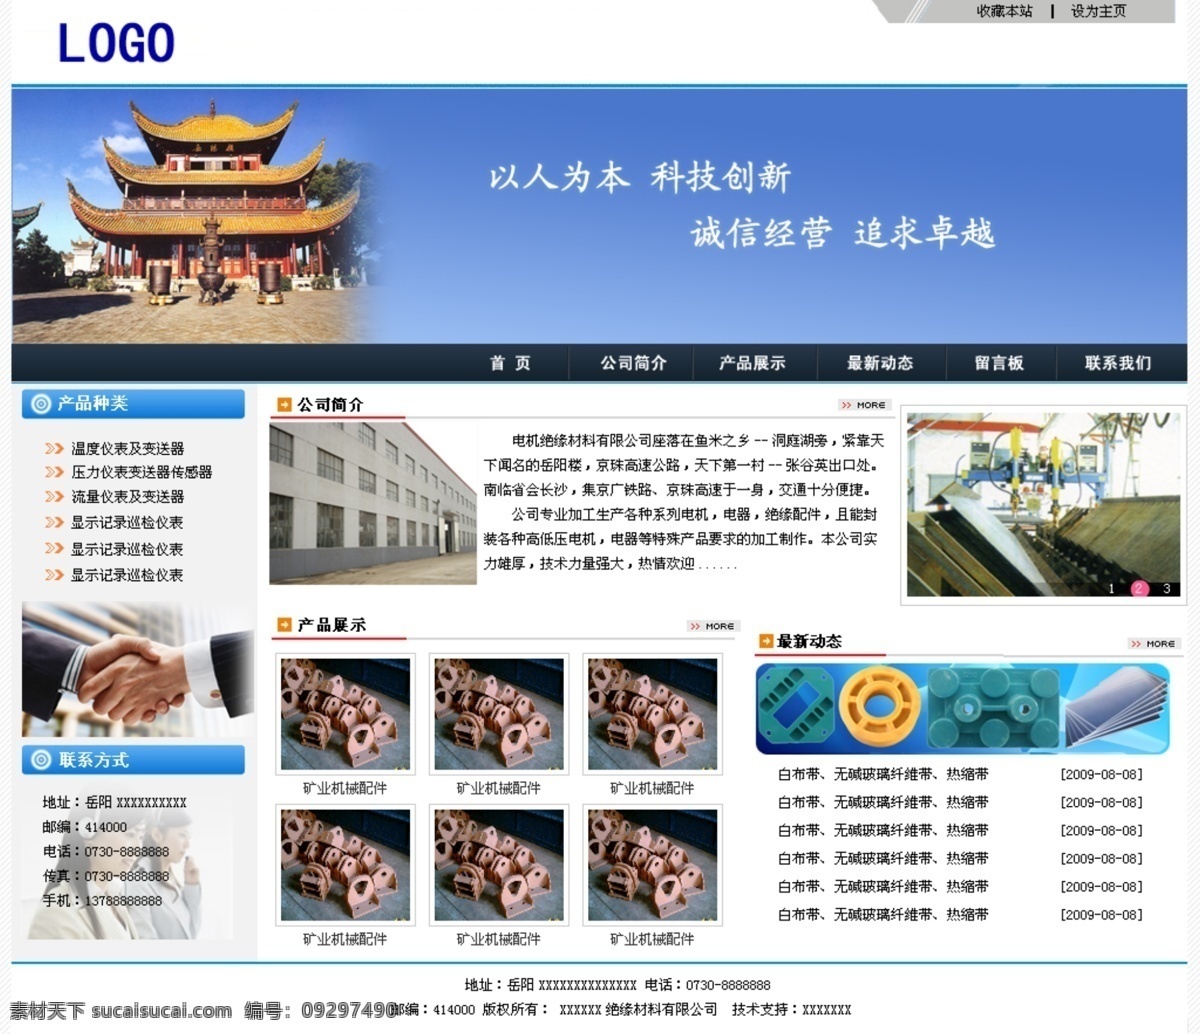 网页制作 网页模板 网页设计 模板下载 源文件 中文模版 网页素材